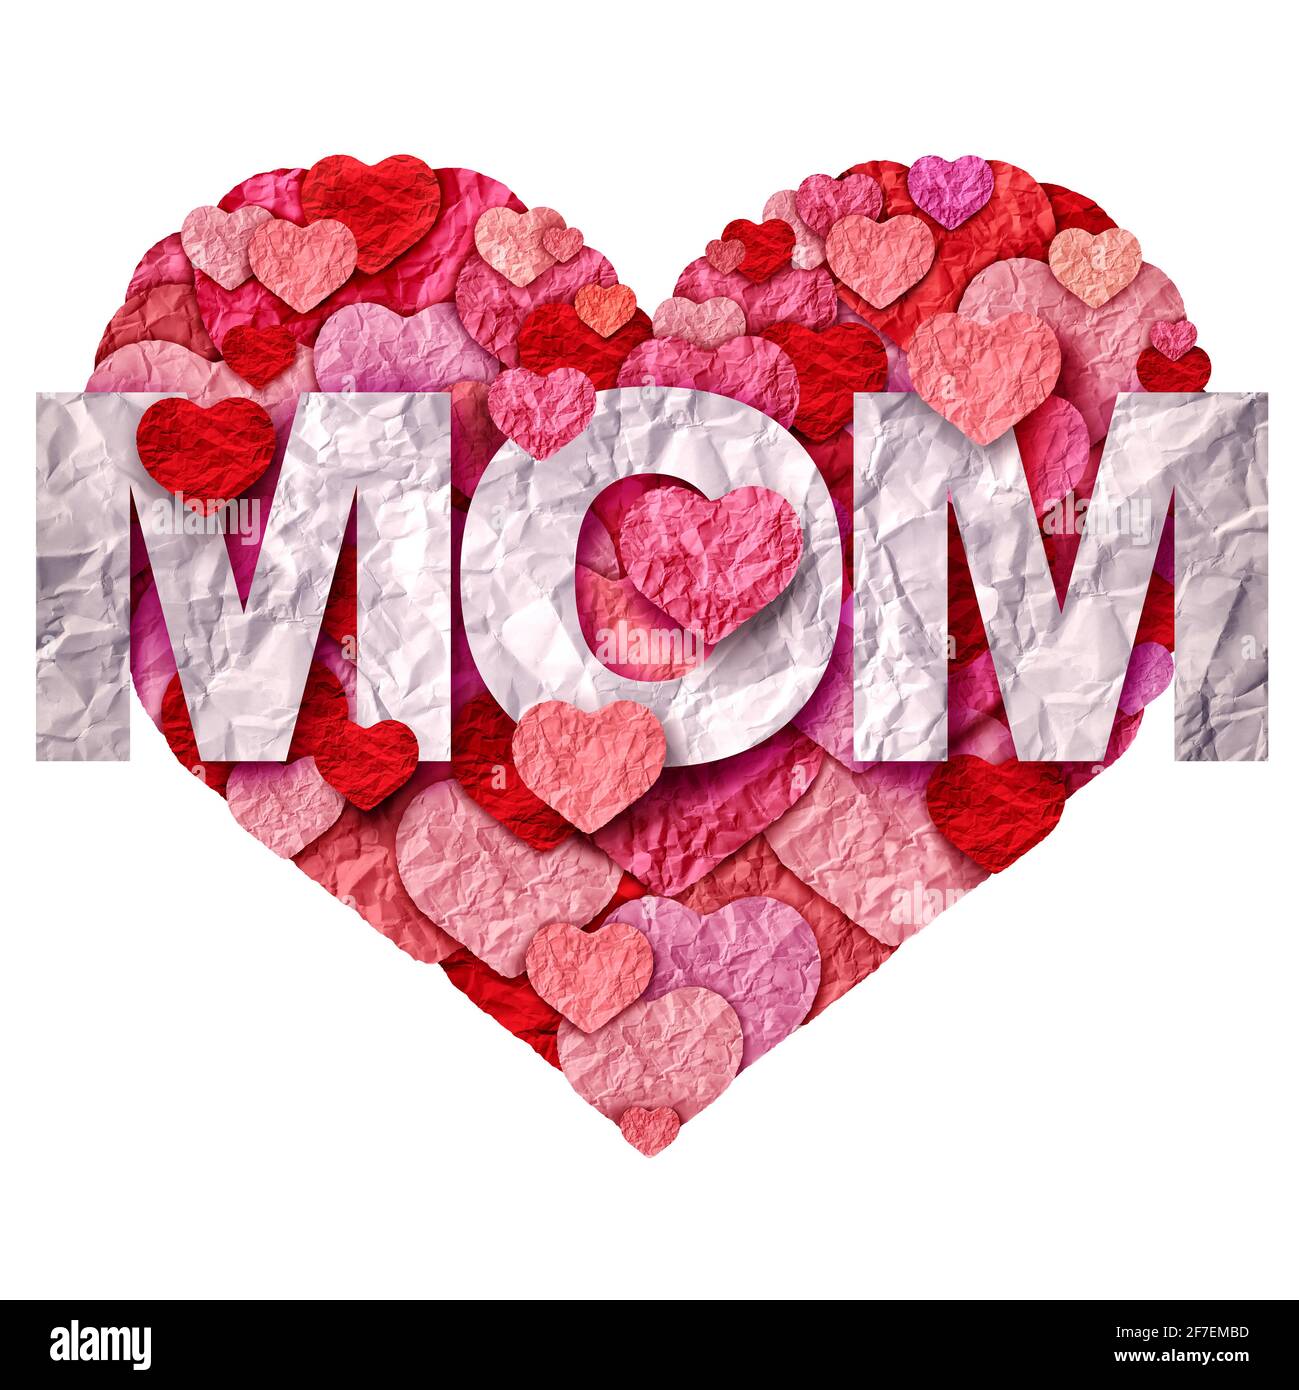 Auguri e celebrazioni per il giorno delle madri o amore per la mamma in uno stile di illustrazione 3D. Foto Stock